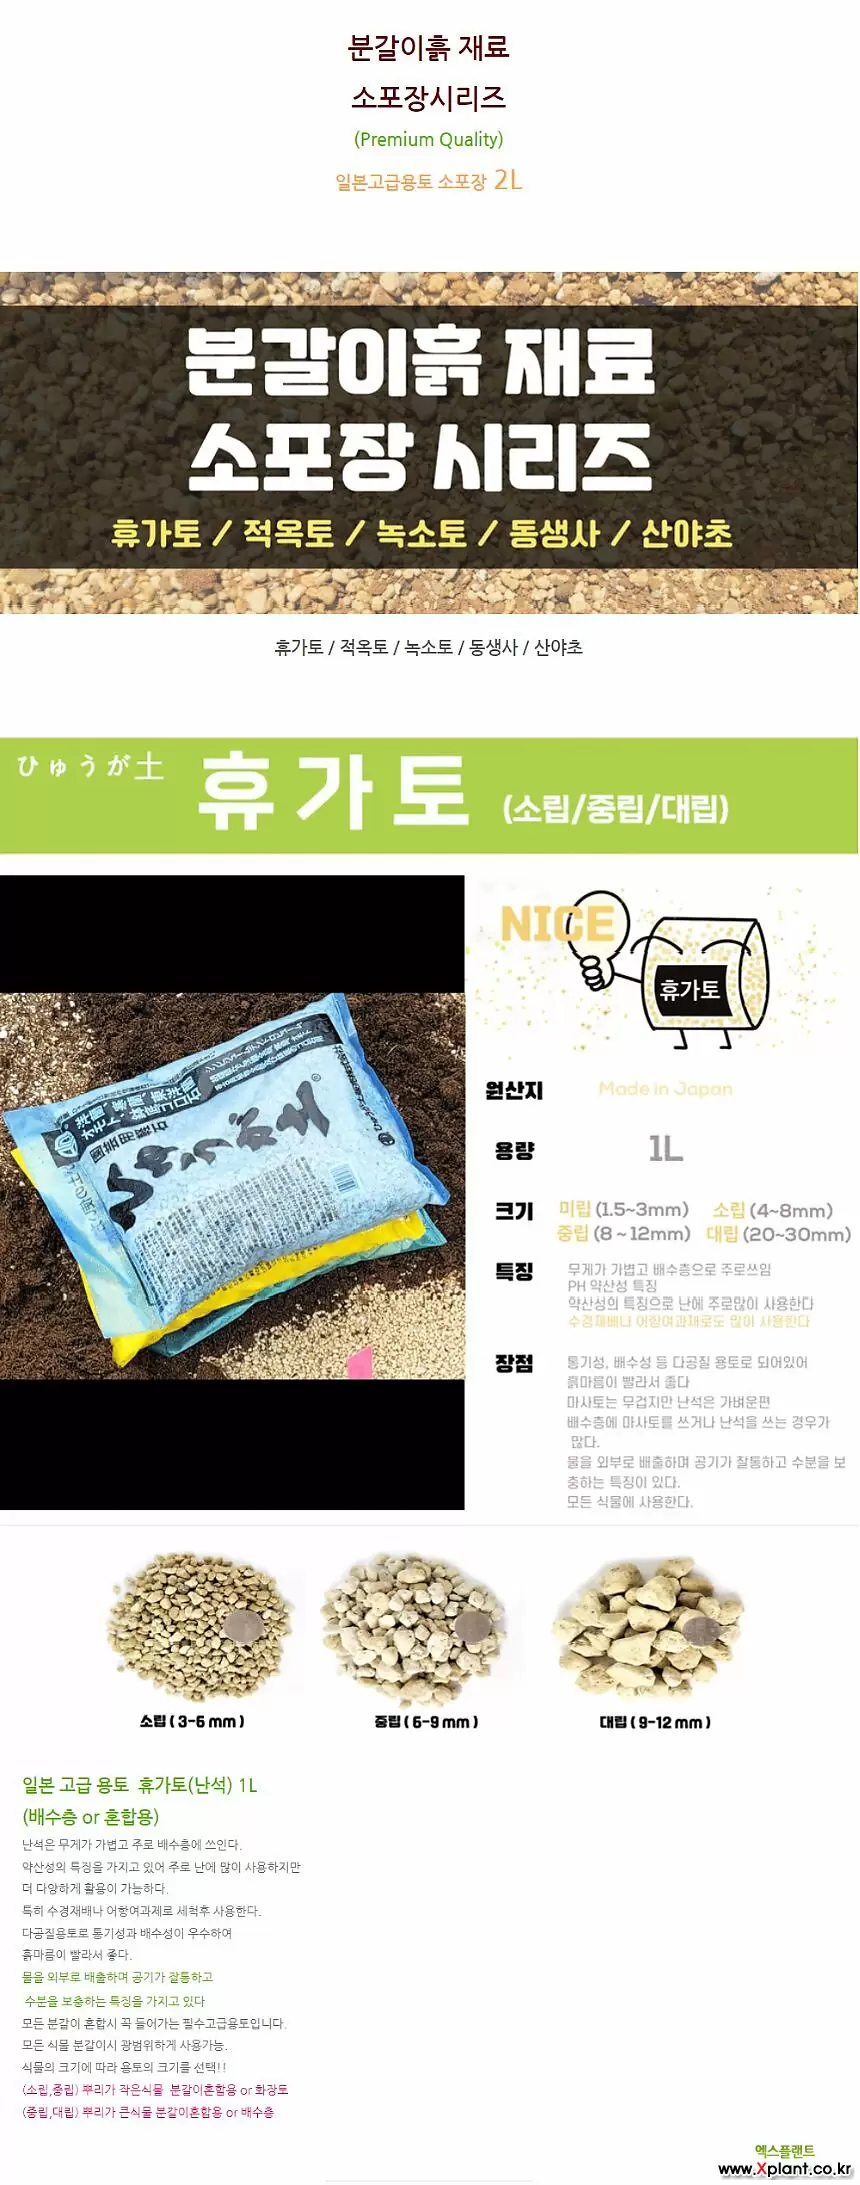 분갈이흙 소포장 2L - 적옥토 녹소토 동생사 산야초 휴가토